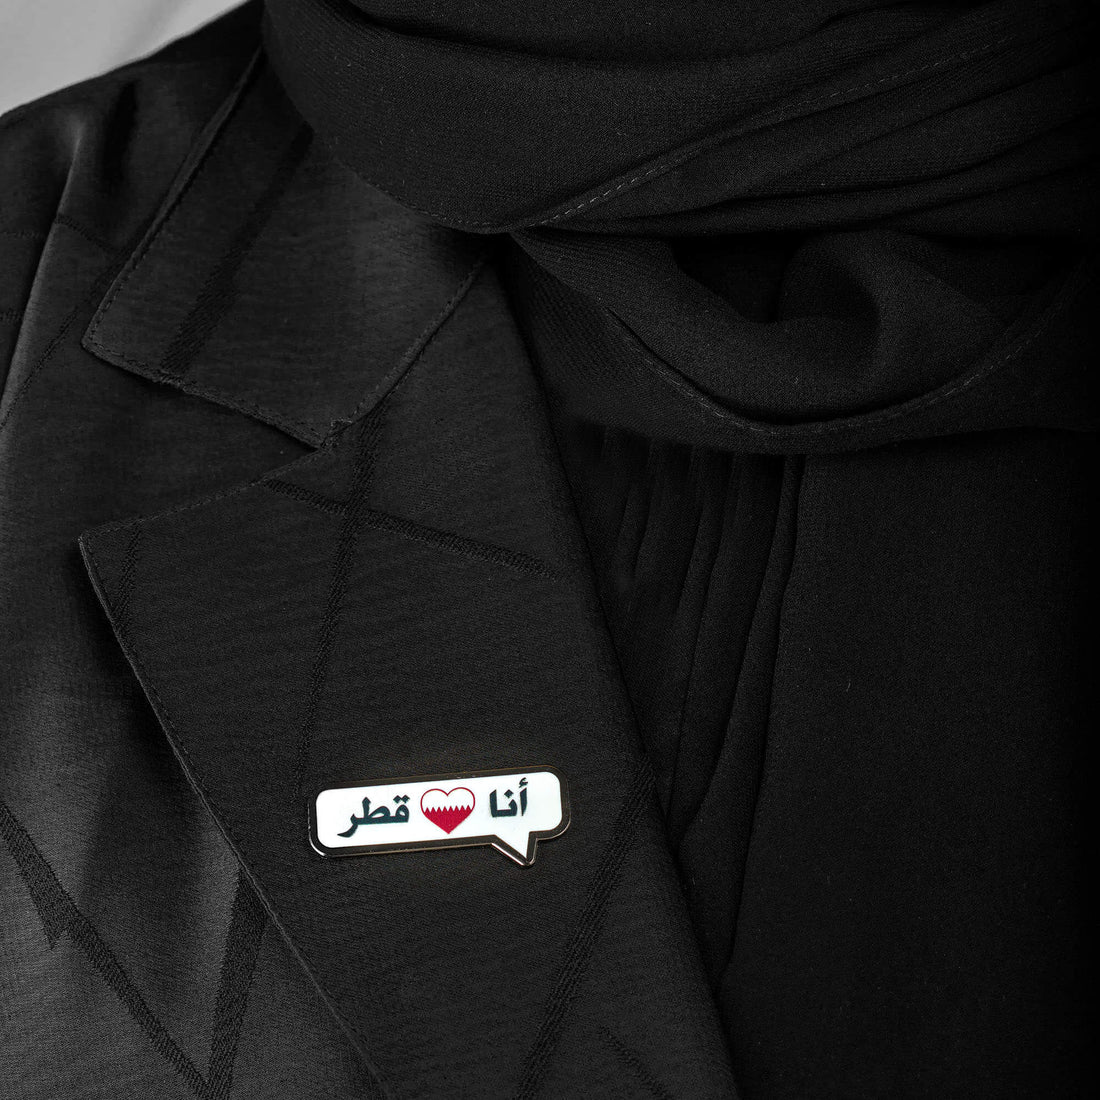 دبوس : أنا أحب قطر ( متوفر كدبوس أو مغناطيس ملابس)